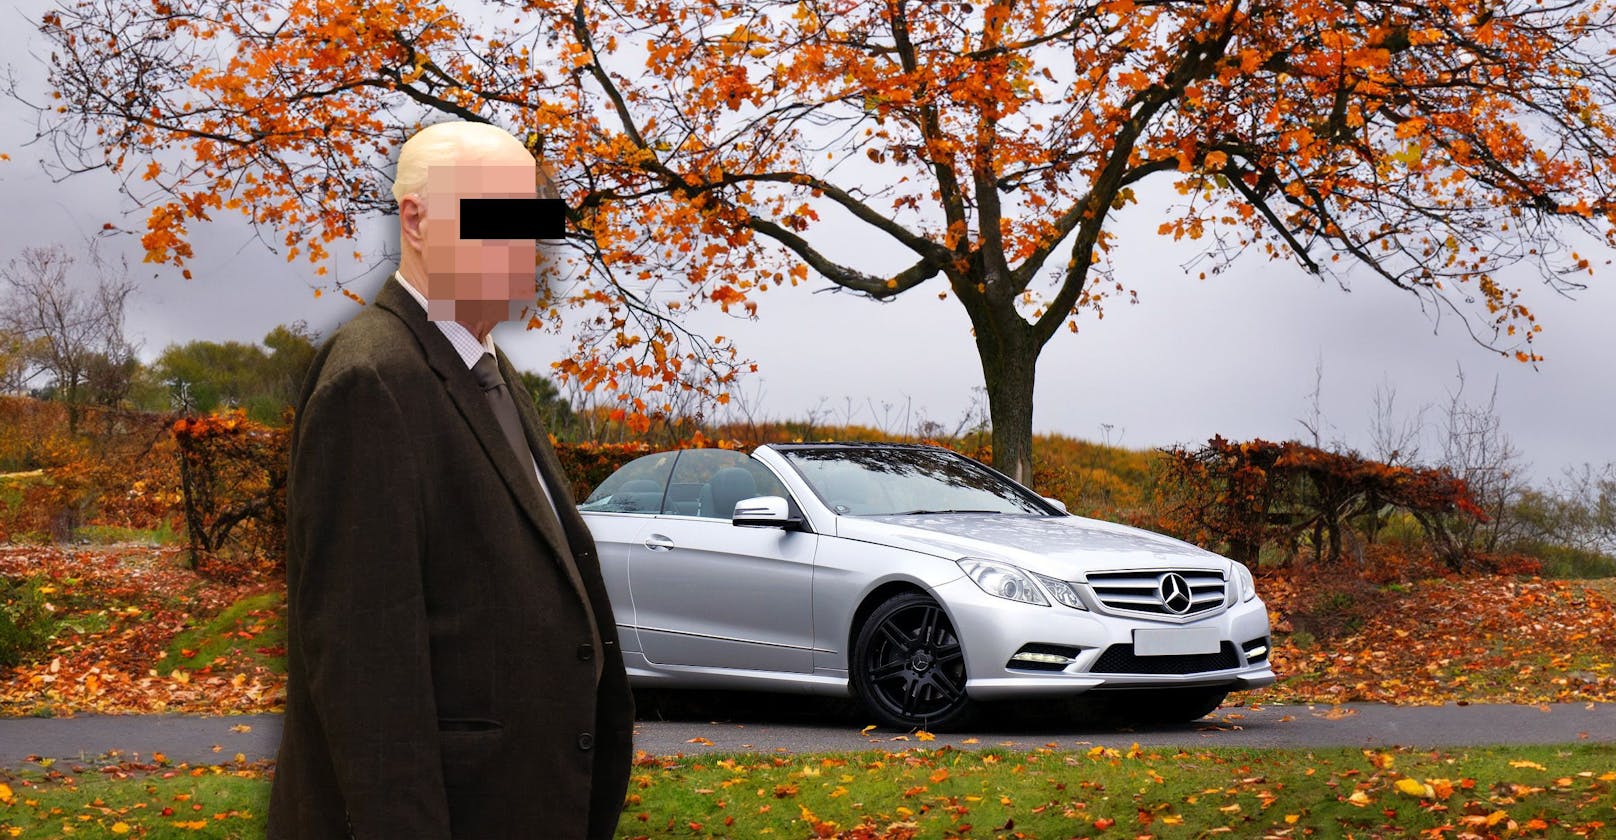 Richard W. (81) soll sich von Fördergeldern der Stadt Wien ein Luxus-Cabrio geleistet haben.